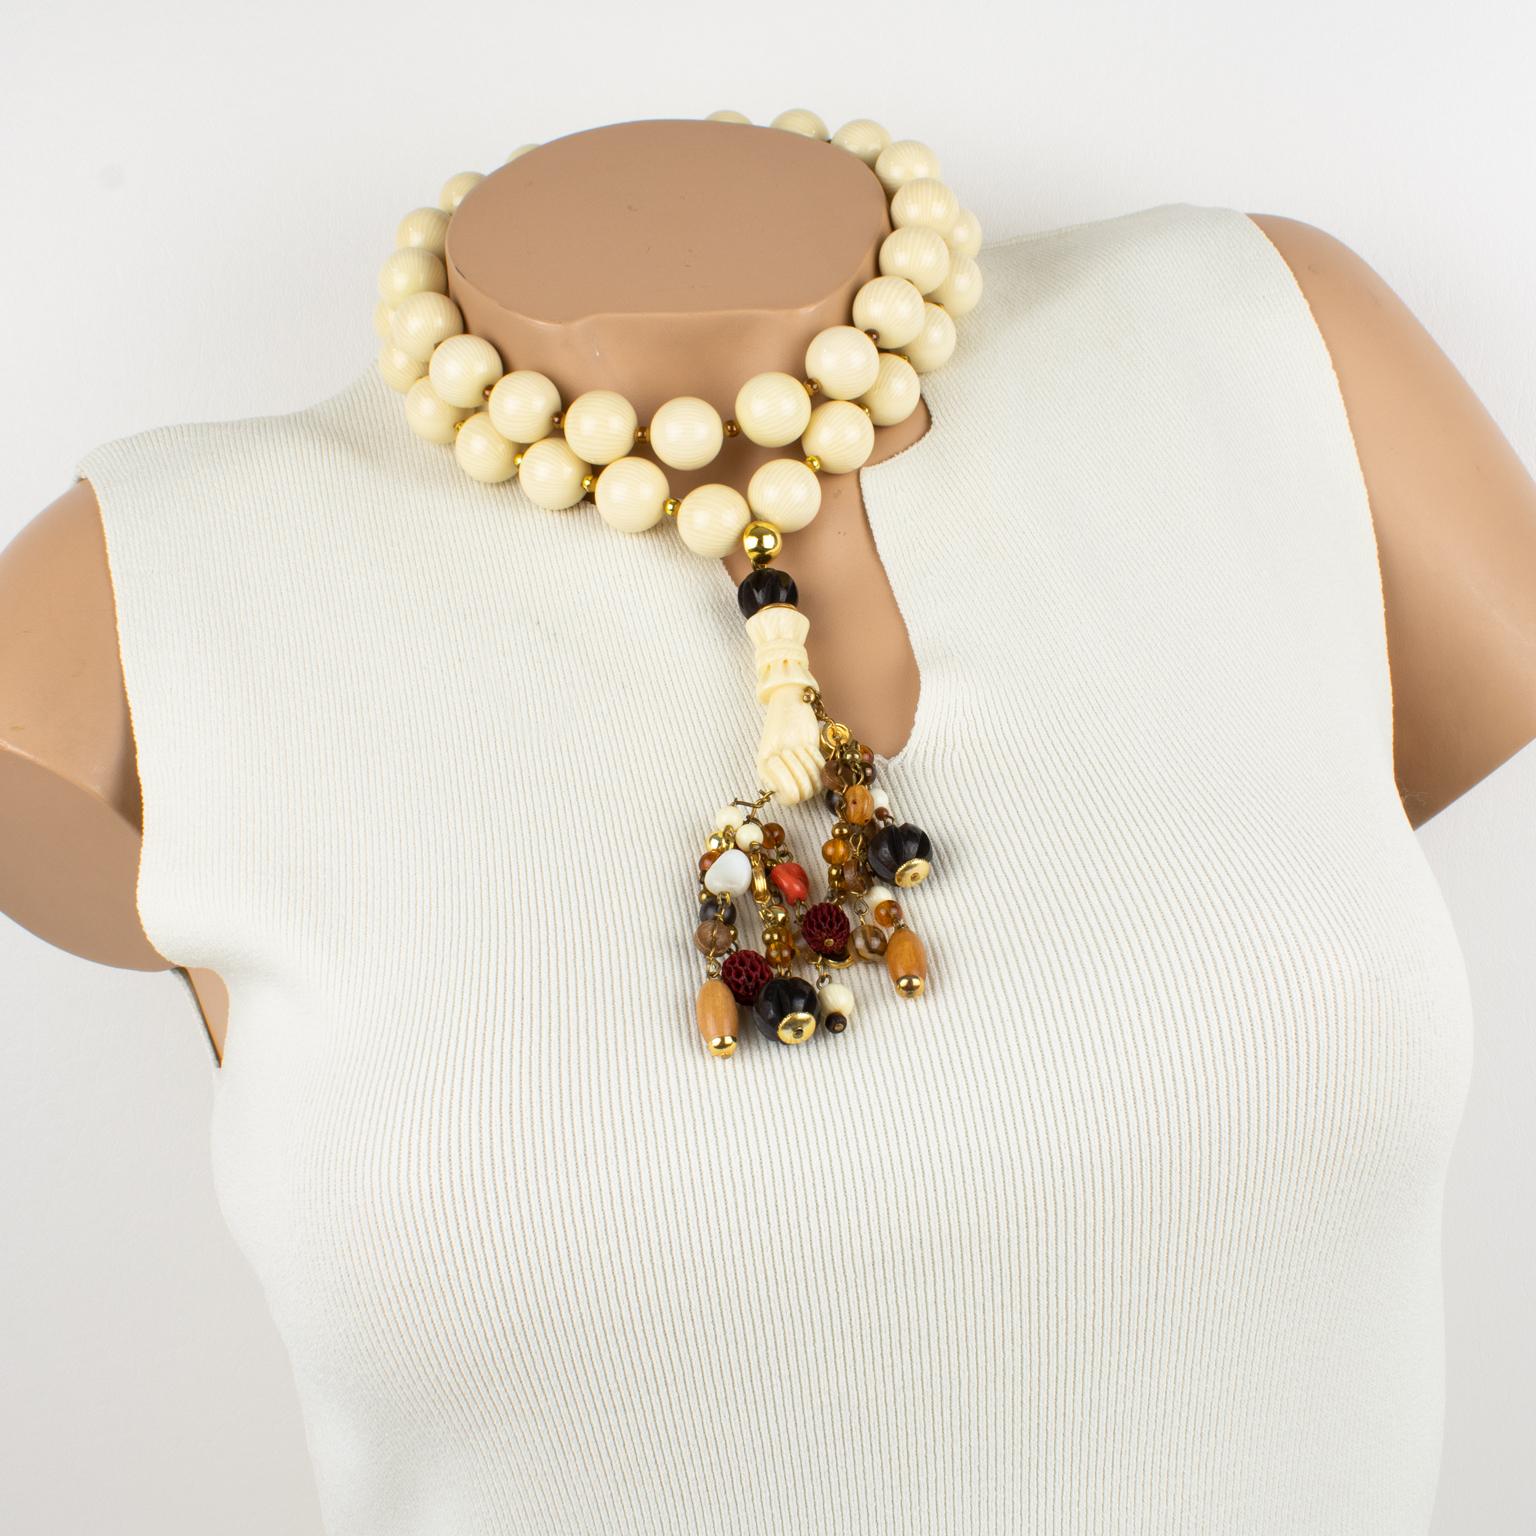 Ce fabuleux collier ras-de-cou Valentino Garavani Haute Couture se compose d'un double fil épais de grosses perles en résine blanc cassé à motif texturé faux ivoire, complété par un long pendentif surdimensionné. Le pendentif représente une main